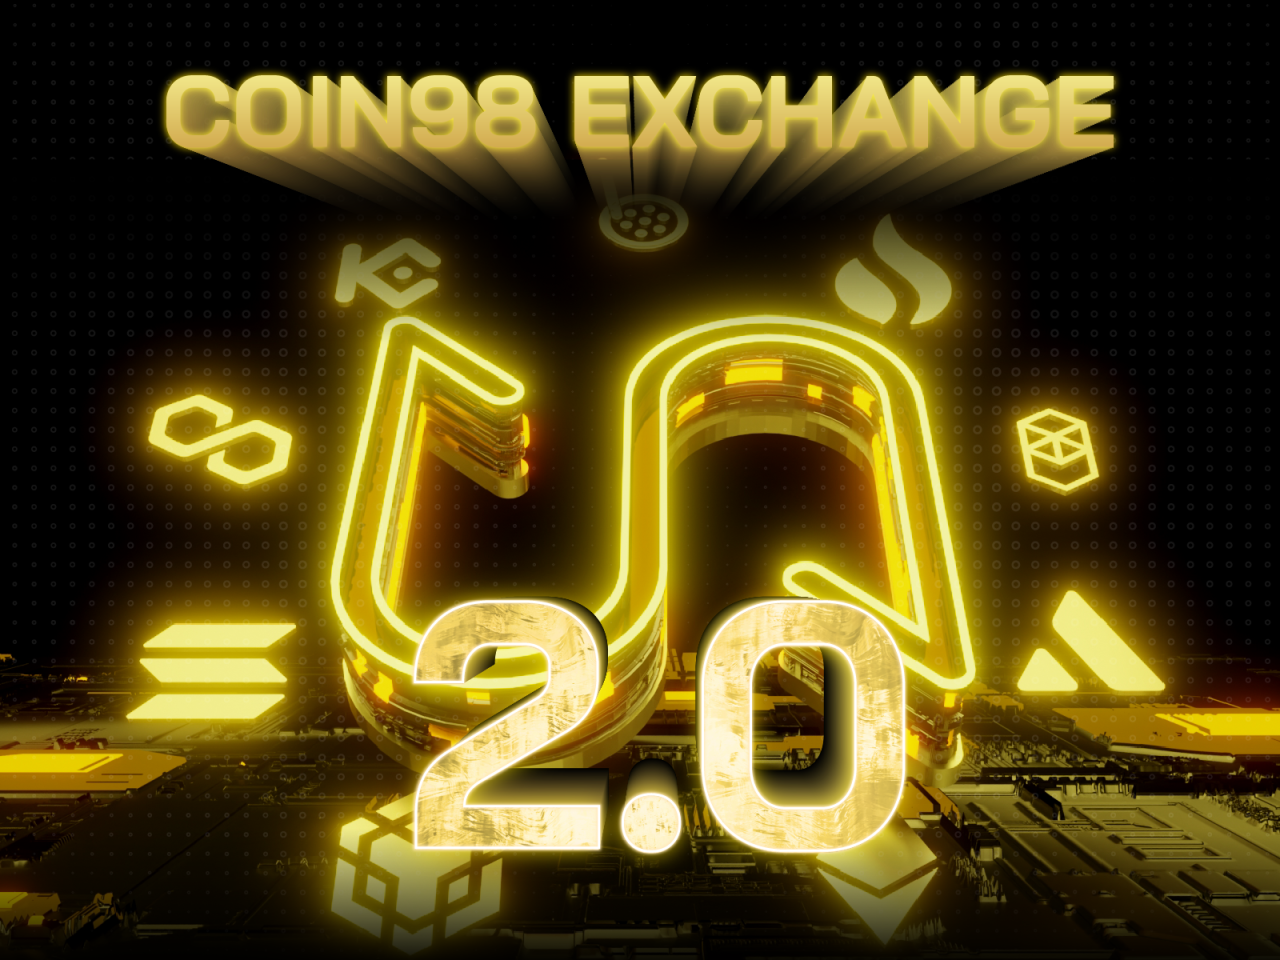 Coin98 Exchange là một trong những sản phẩm quan trọng nhất của hệ sinh thái Coin98